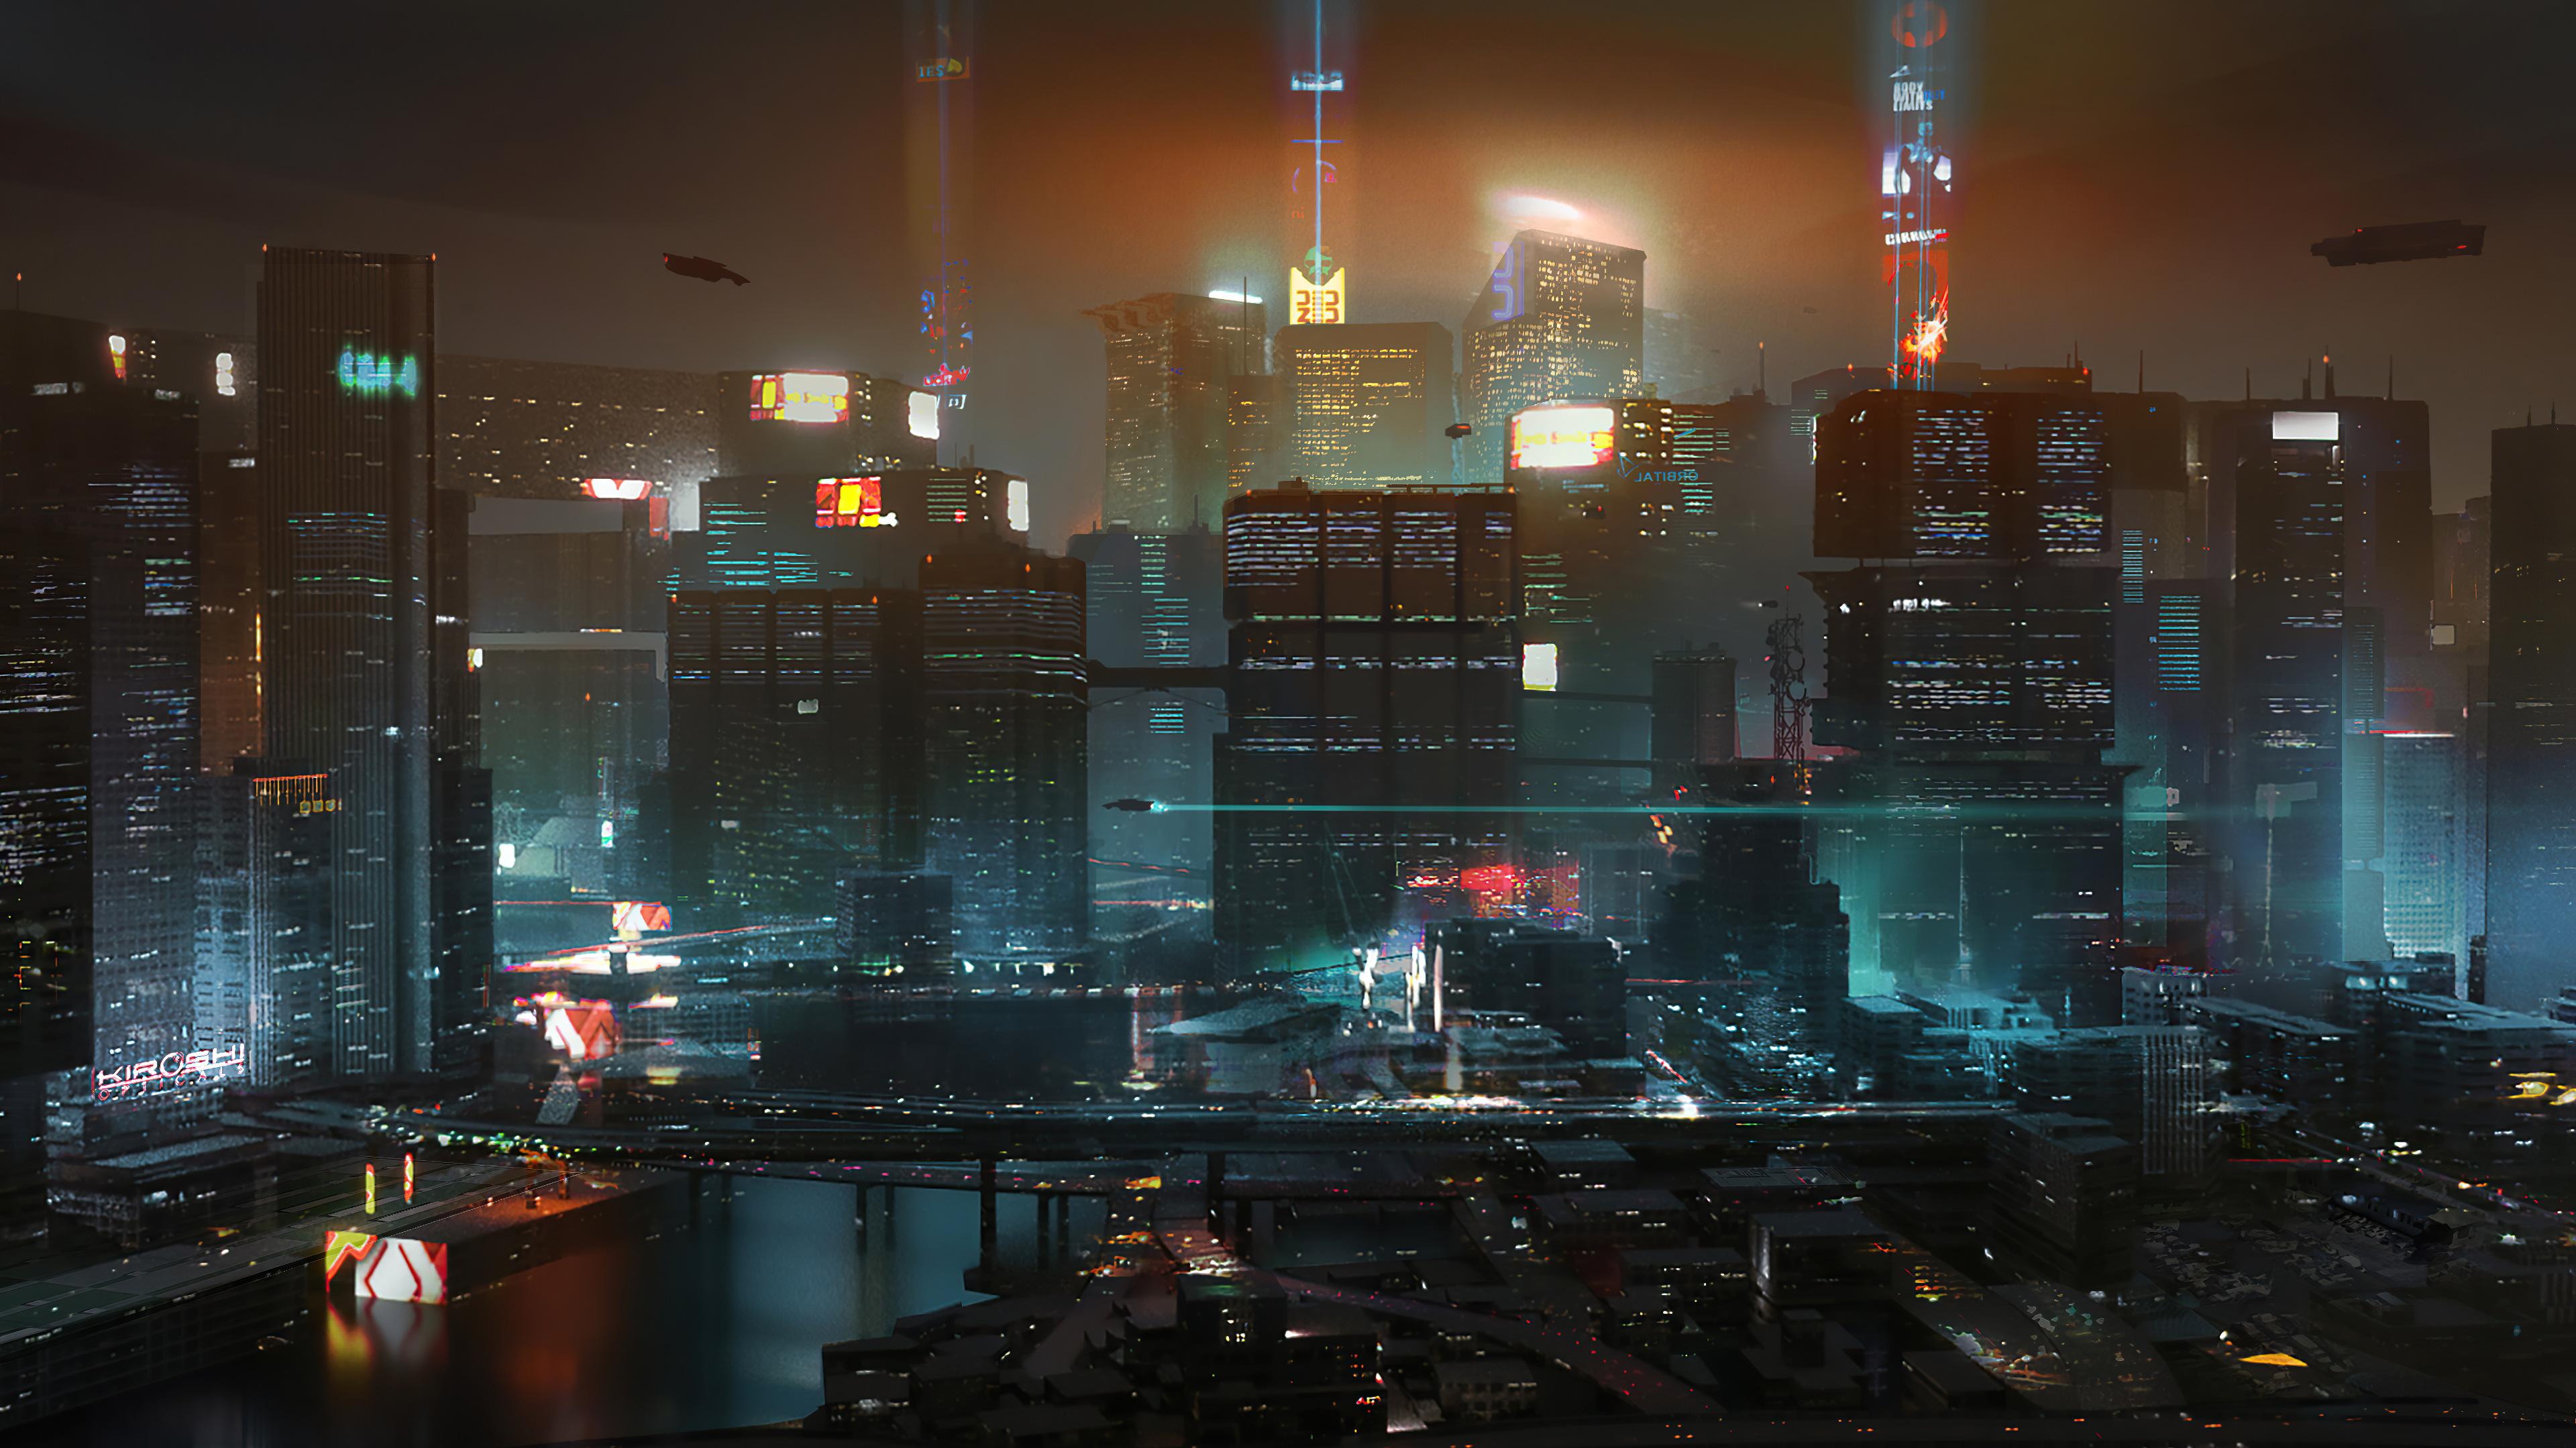 Cyberpunk Night City Concept Art 4k Wallpaper